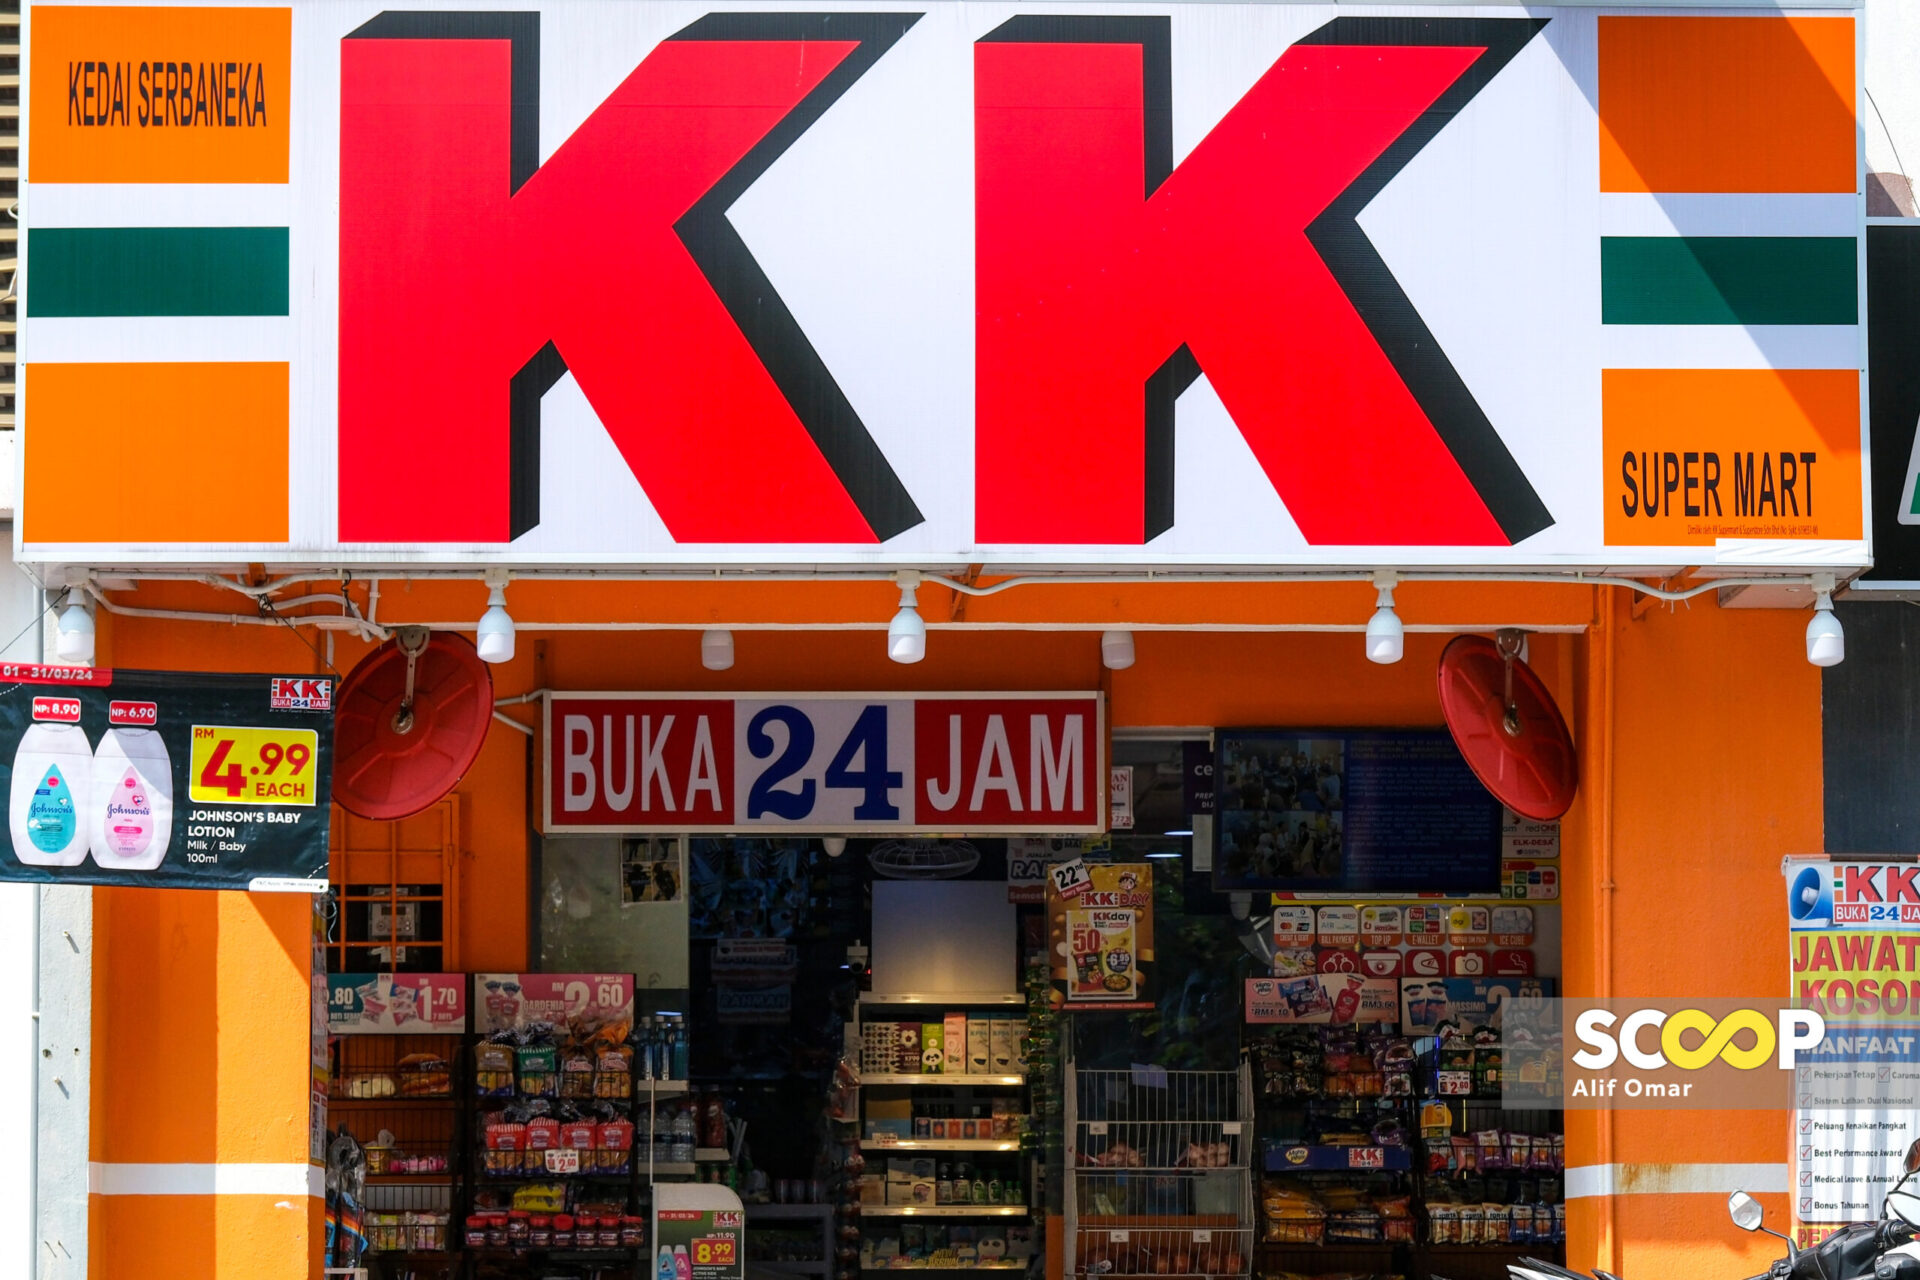 Boikot KK Mart: Pandangan Mufti Perak diteliti, ambil kira semua sudut sebelum keputusan dibuat